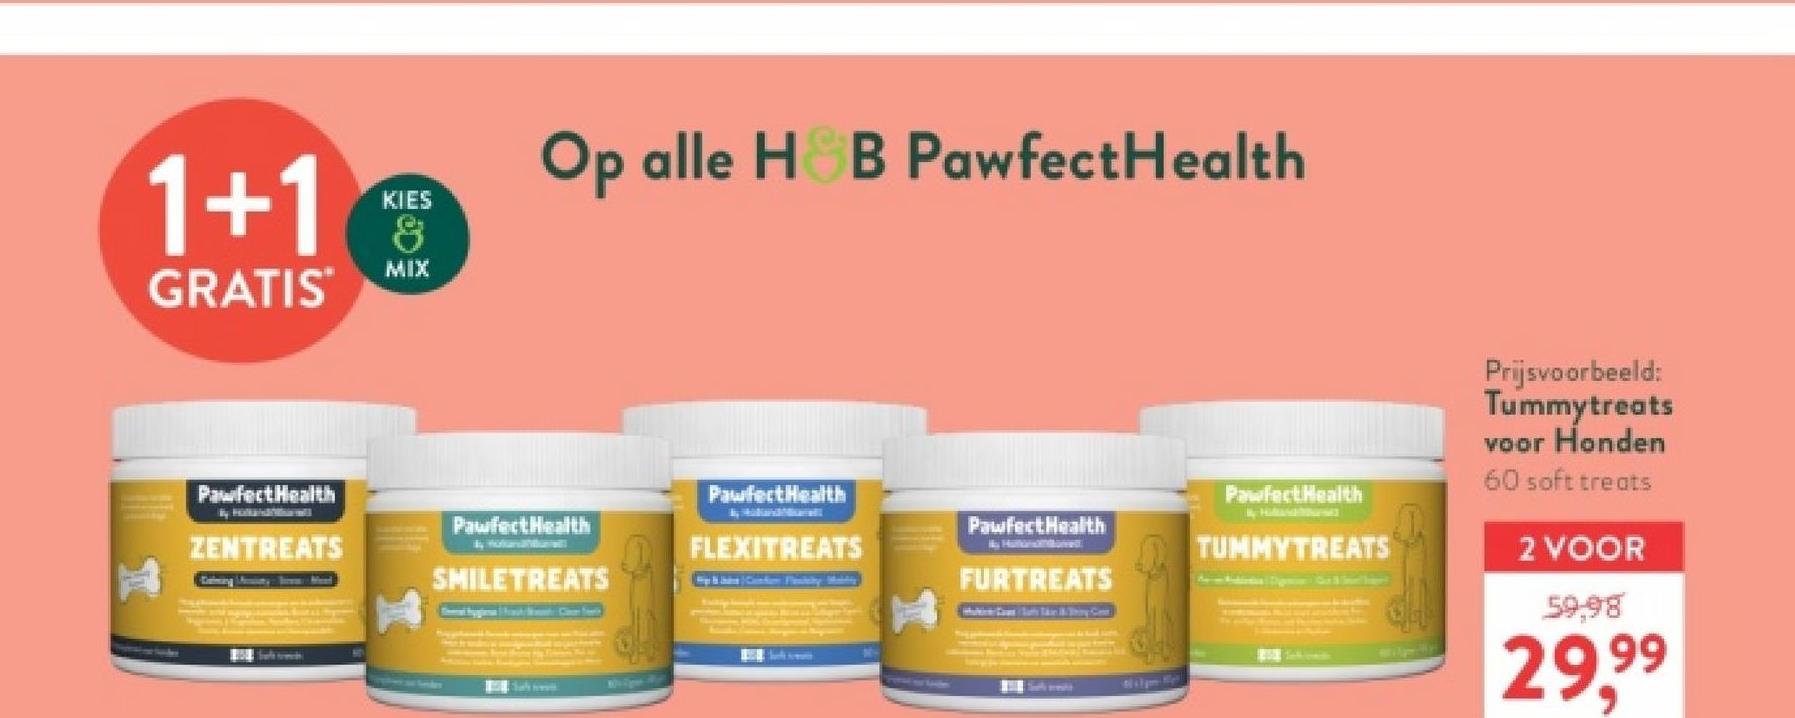 1+1
GRATIS
KIES
&
MIX
Op alle H&B PawfectHealth
Pawfect Health
PawfectHealth
PawfectHealth
Pawfect Health
ZENTREATS
FLEXITREATS
SMILETREATS
FURTREATS
Sal
Pawfect Health
TUMMYTREATS
Prijsvoorbeeld:
Tummytreats
voor Honden
60 soft treats
2 VOOR
59,98
29.99